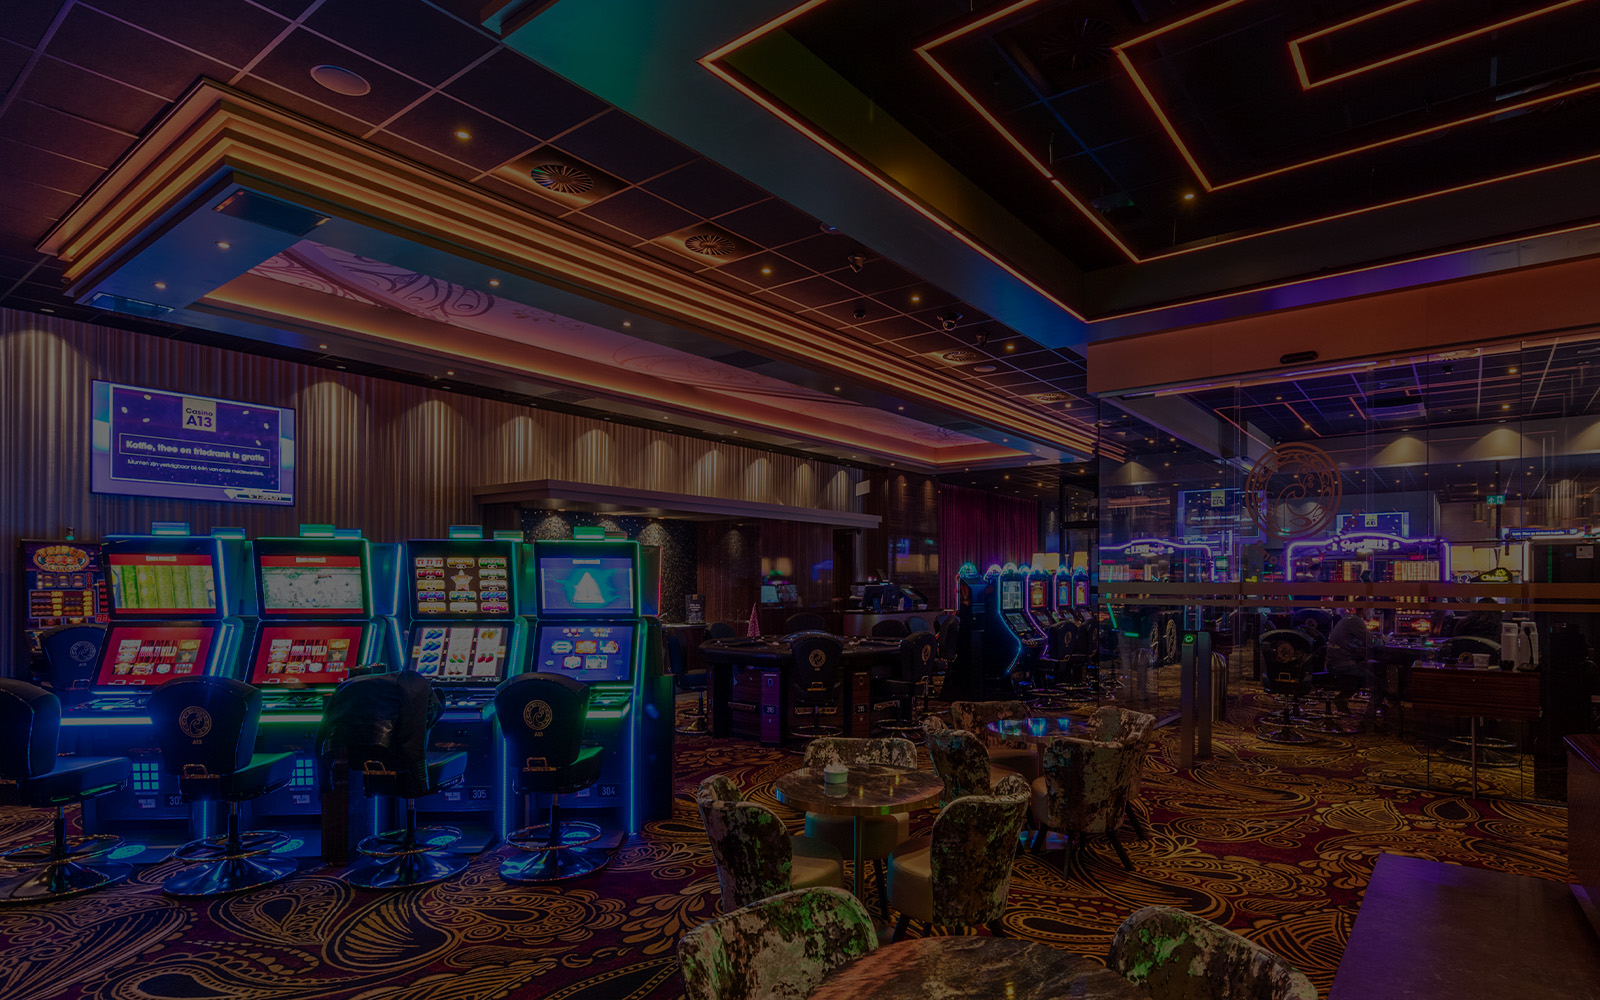 Palace Group Casinos